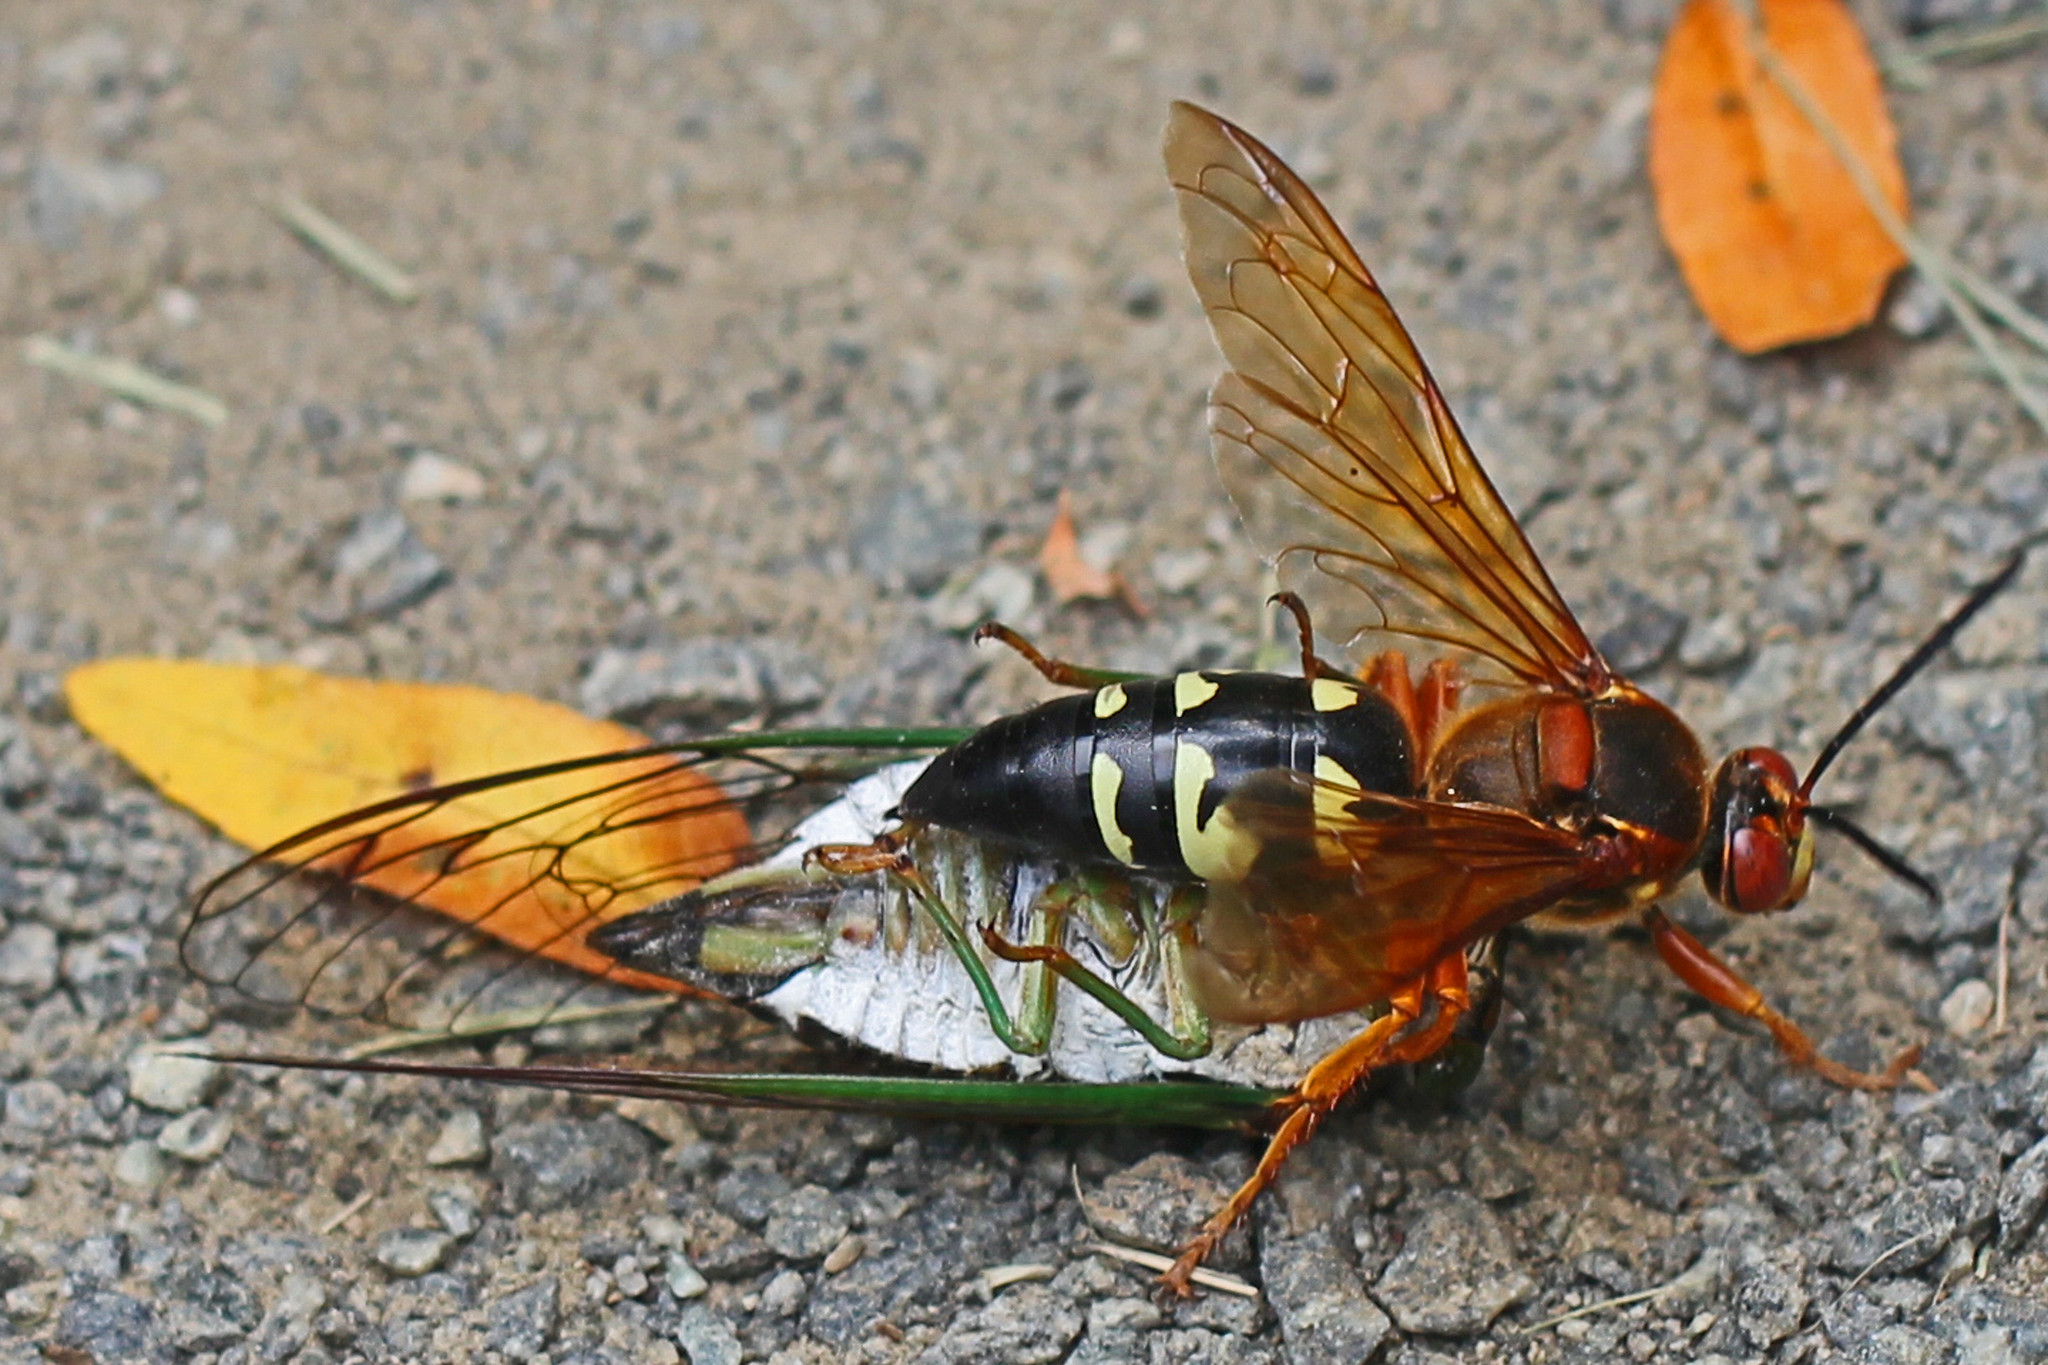 Cicada killer wasp atop its cicada prey